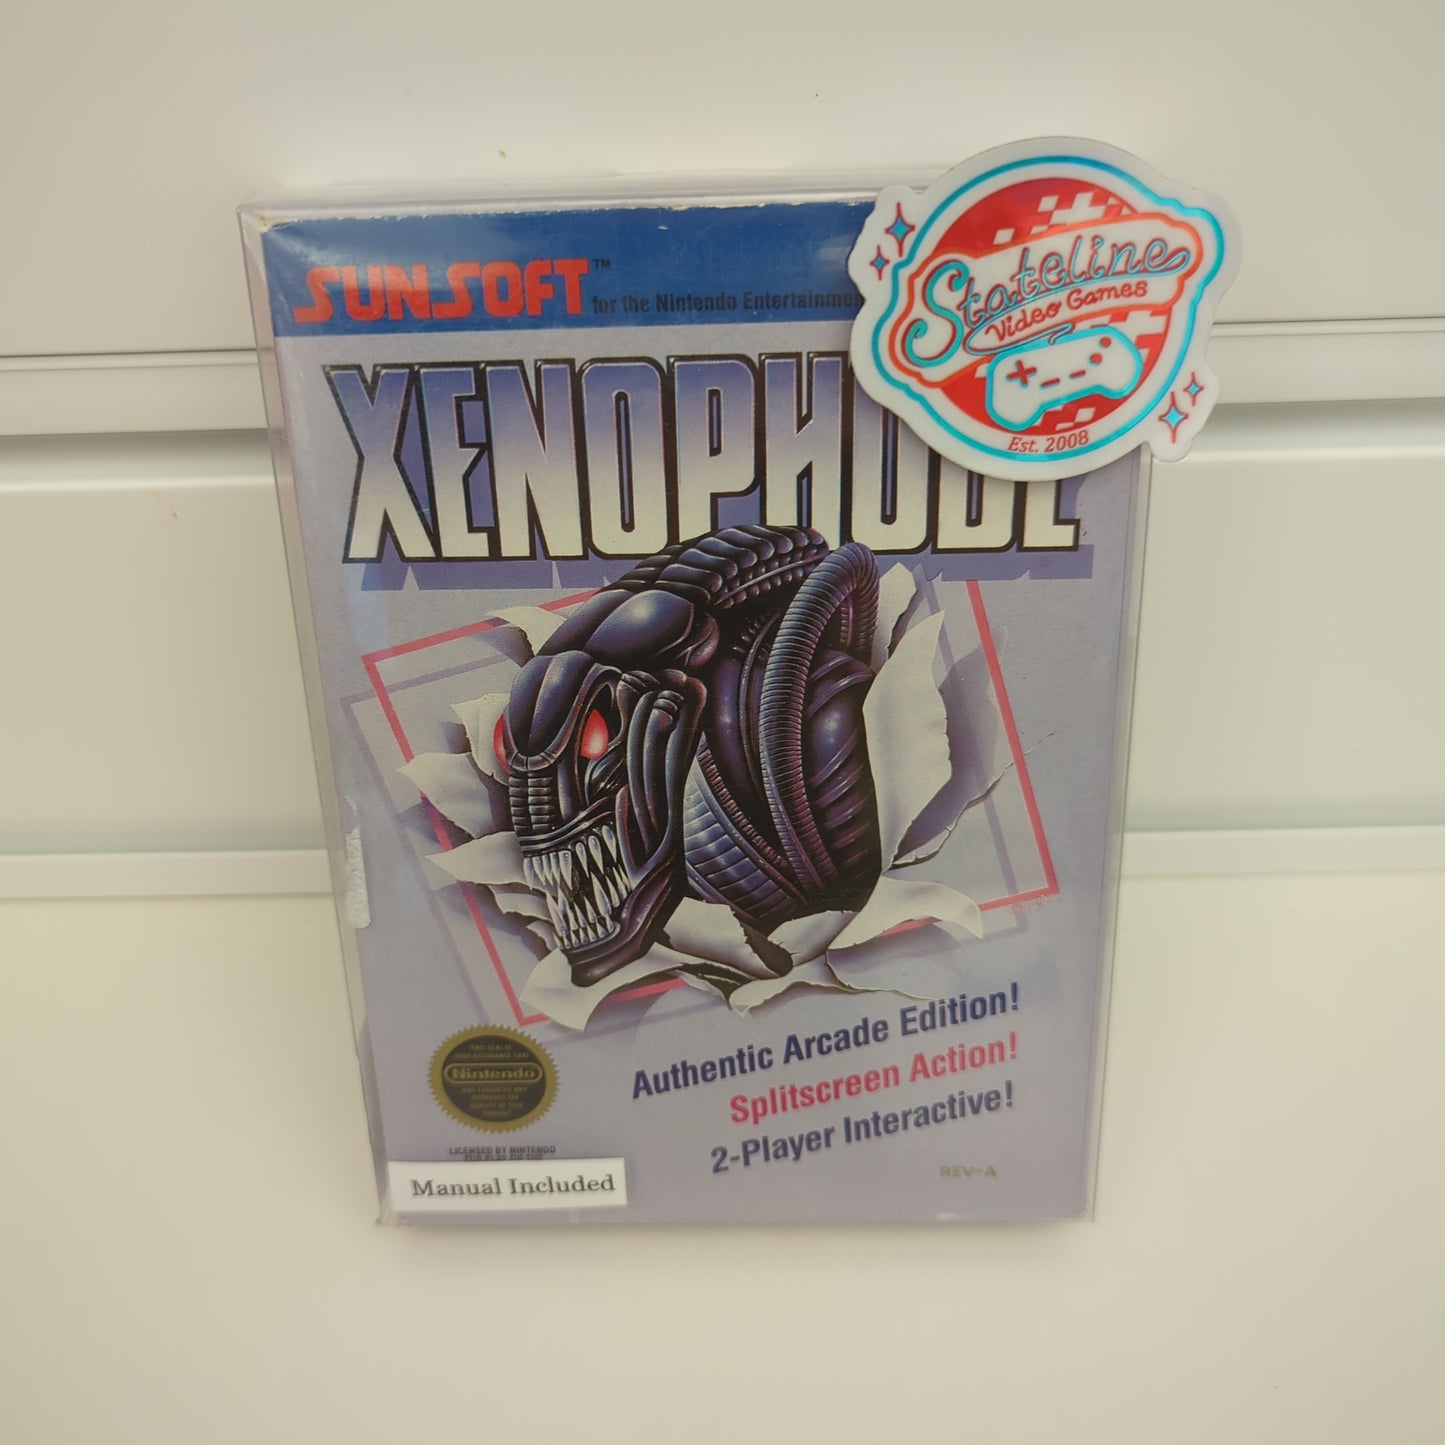 Xenophobe - NES